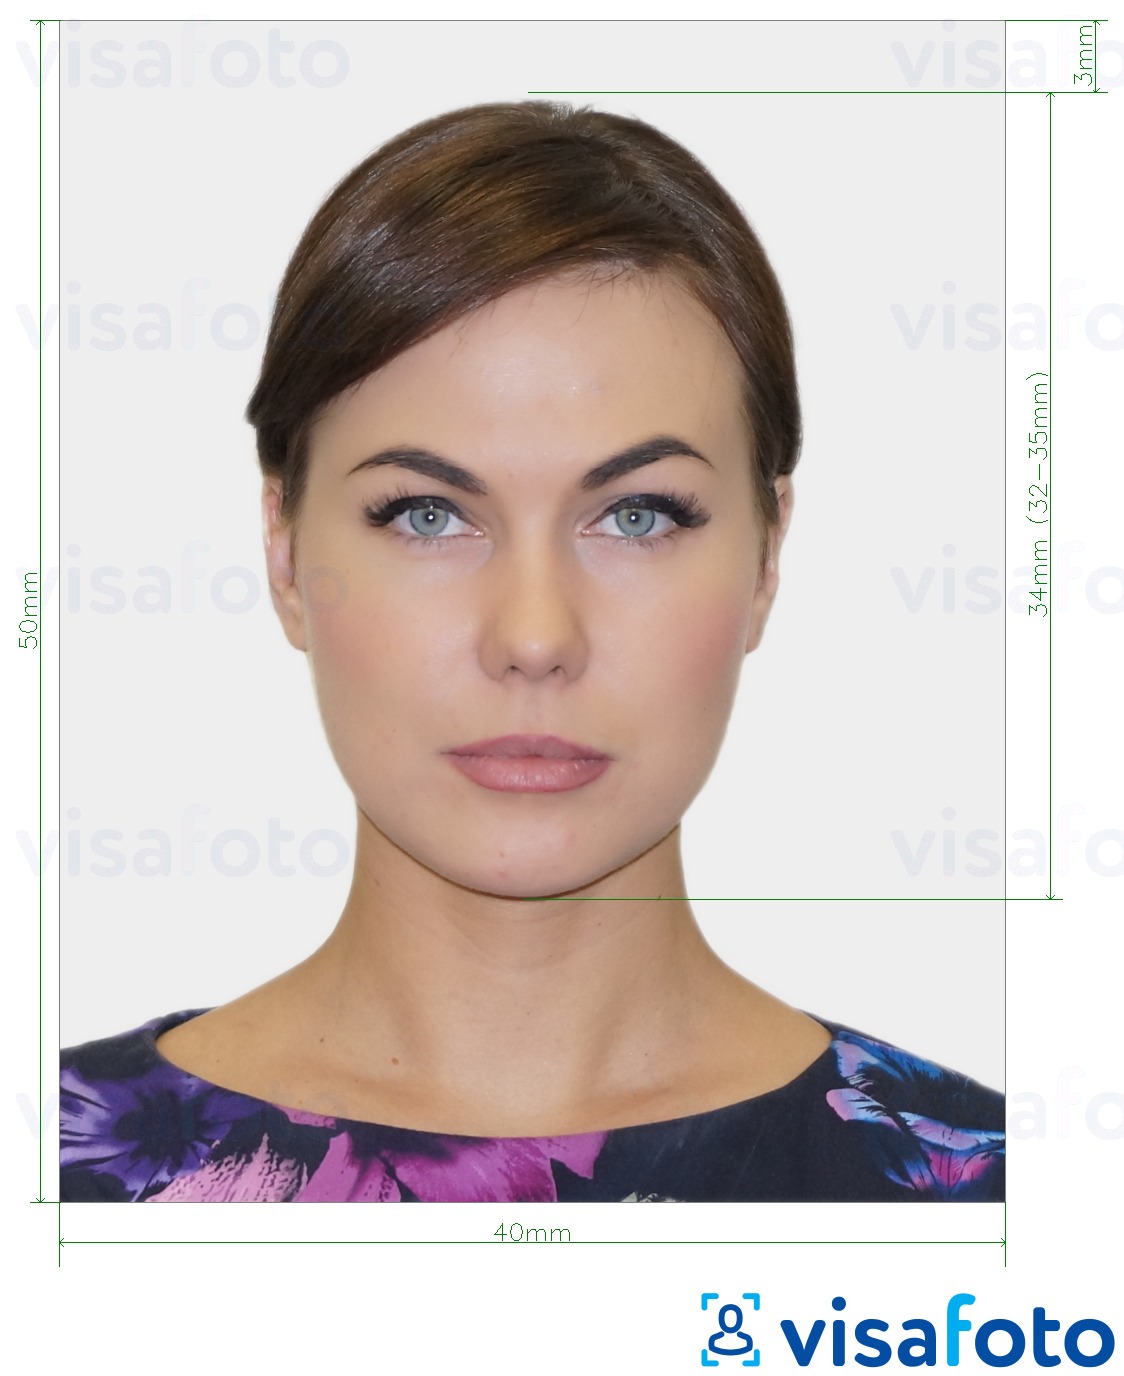 Приклад фотографії для Білоруський паспорт 40x50 мм (4x5 см) з точними специфікаціями розміру